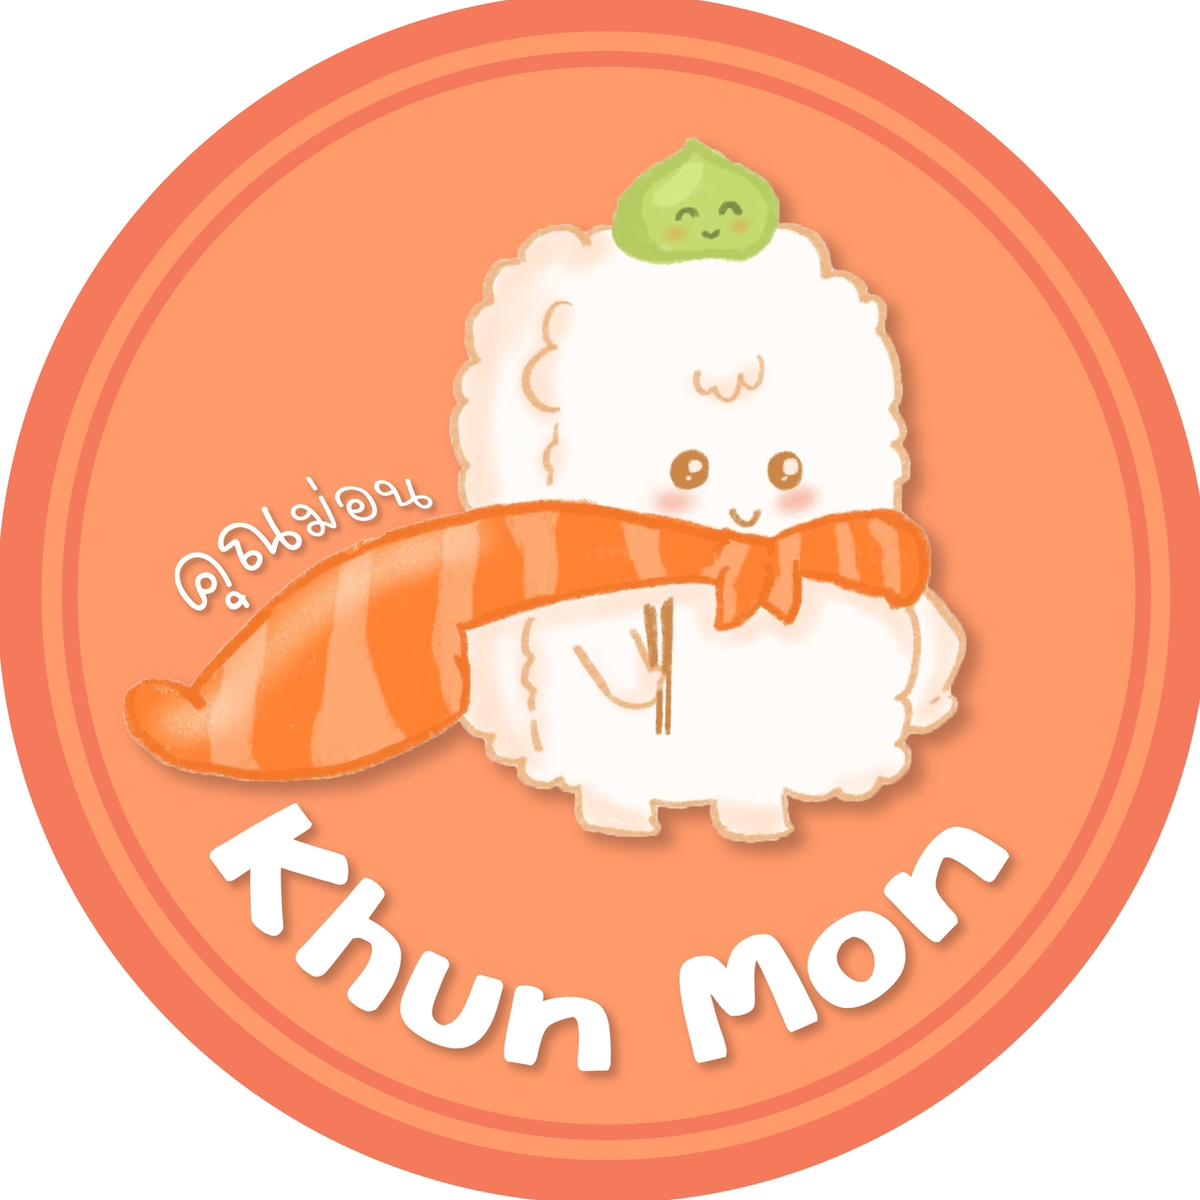 Khun Mon